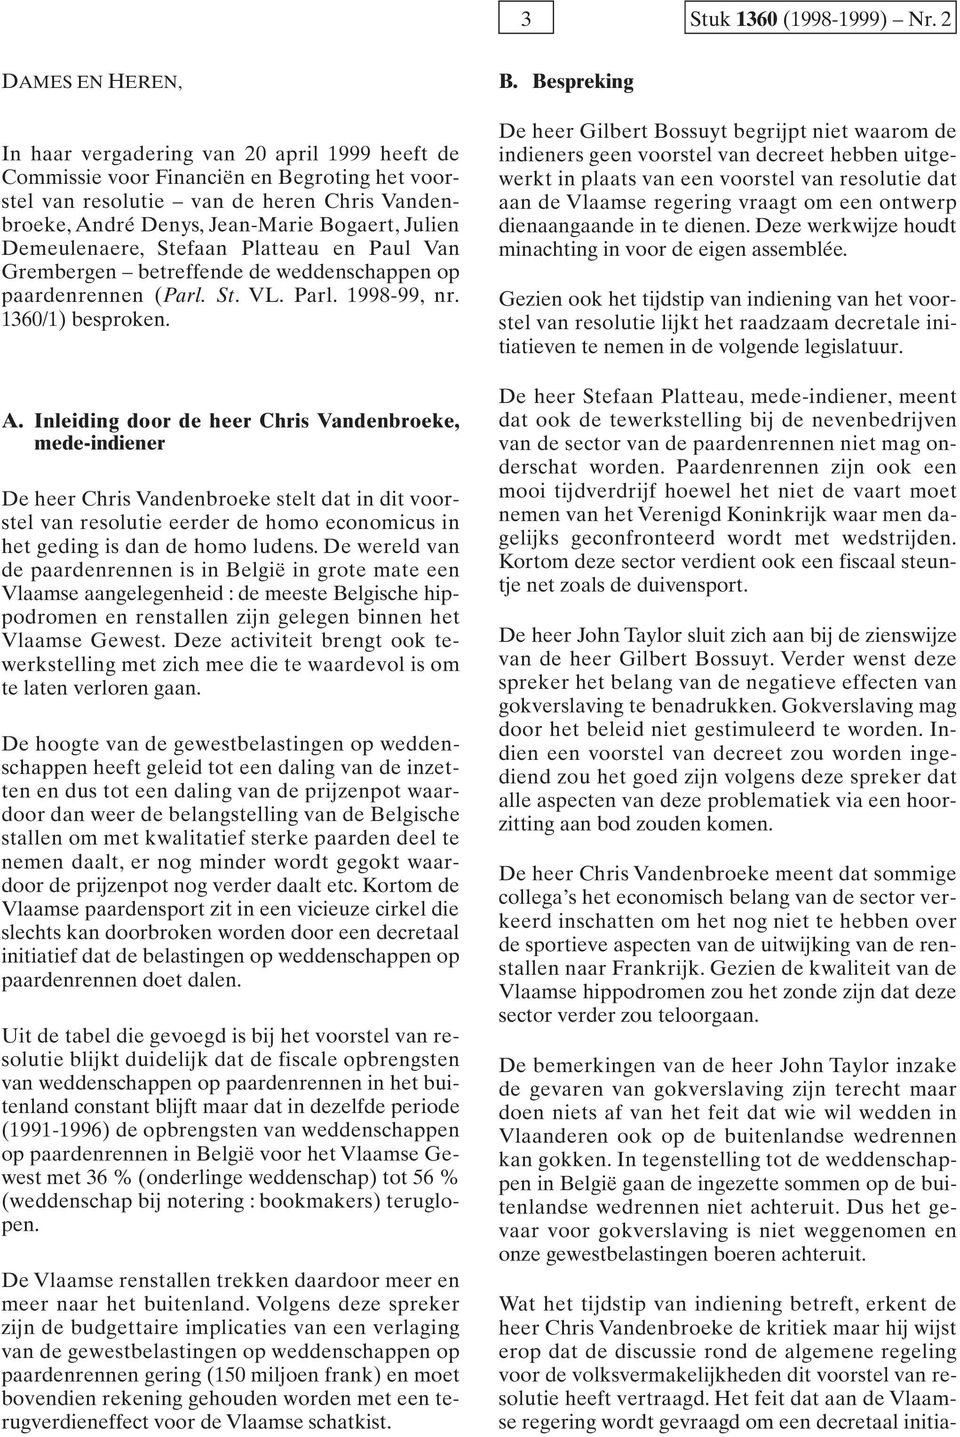 Julien Demeulenaere, Stefaan Platteau en Paul Van Grembergen betreffende de weddenschappen op paardenrennen (Parl. St. VL. Parl. 1998-99, nr. 1360/1) besproken. A.